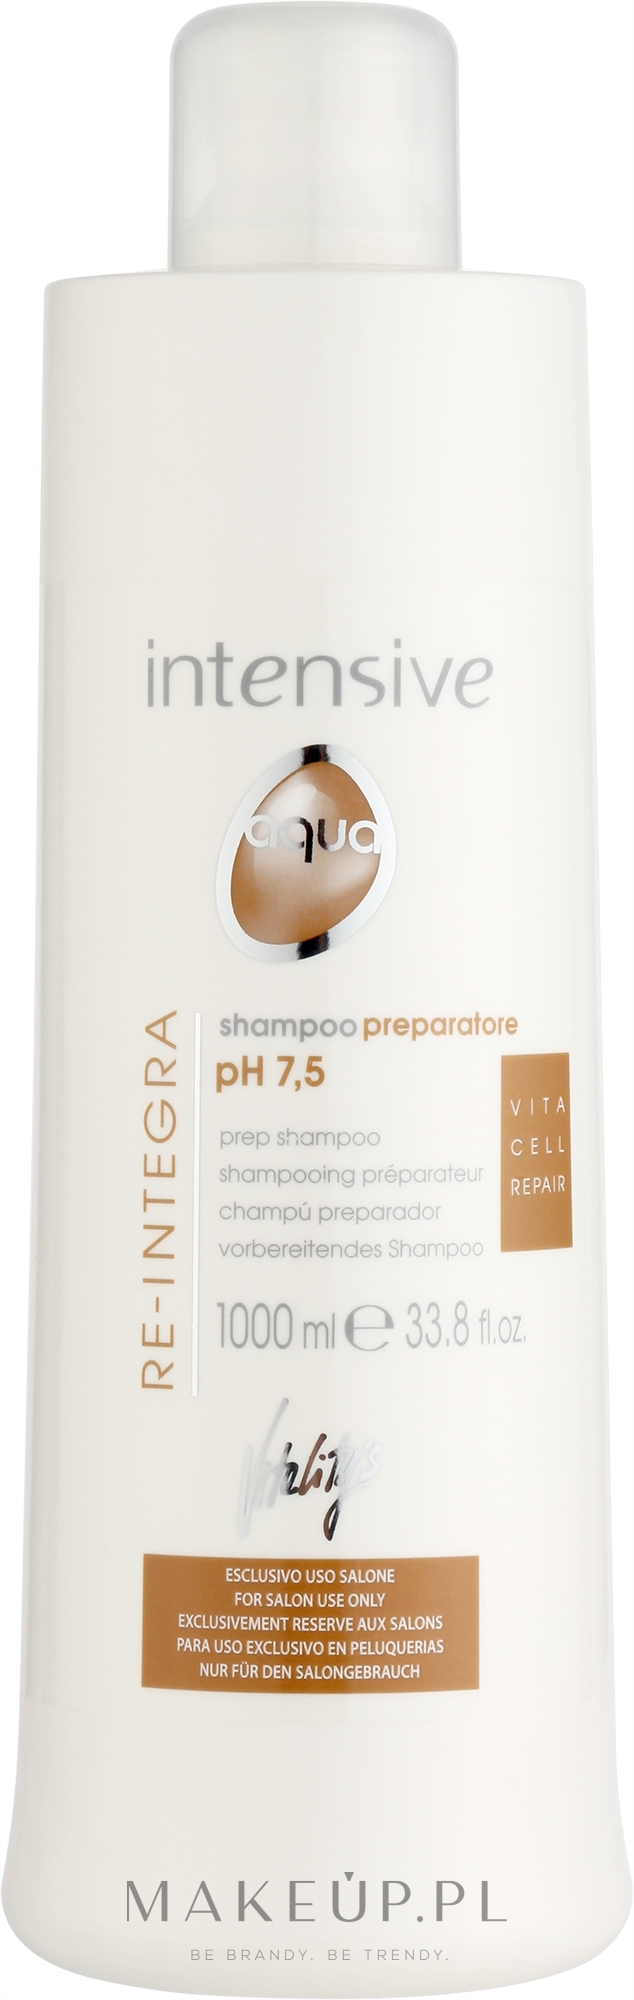 Głęboko oczyszczający szampon do włosów - Vitality’s Intensive Aqua Re-Integra Shampoo pH 7,5 — Zdjęcie 1000 ml